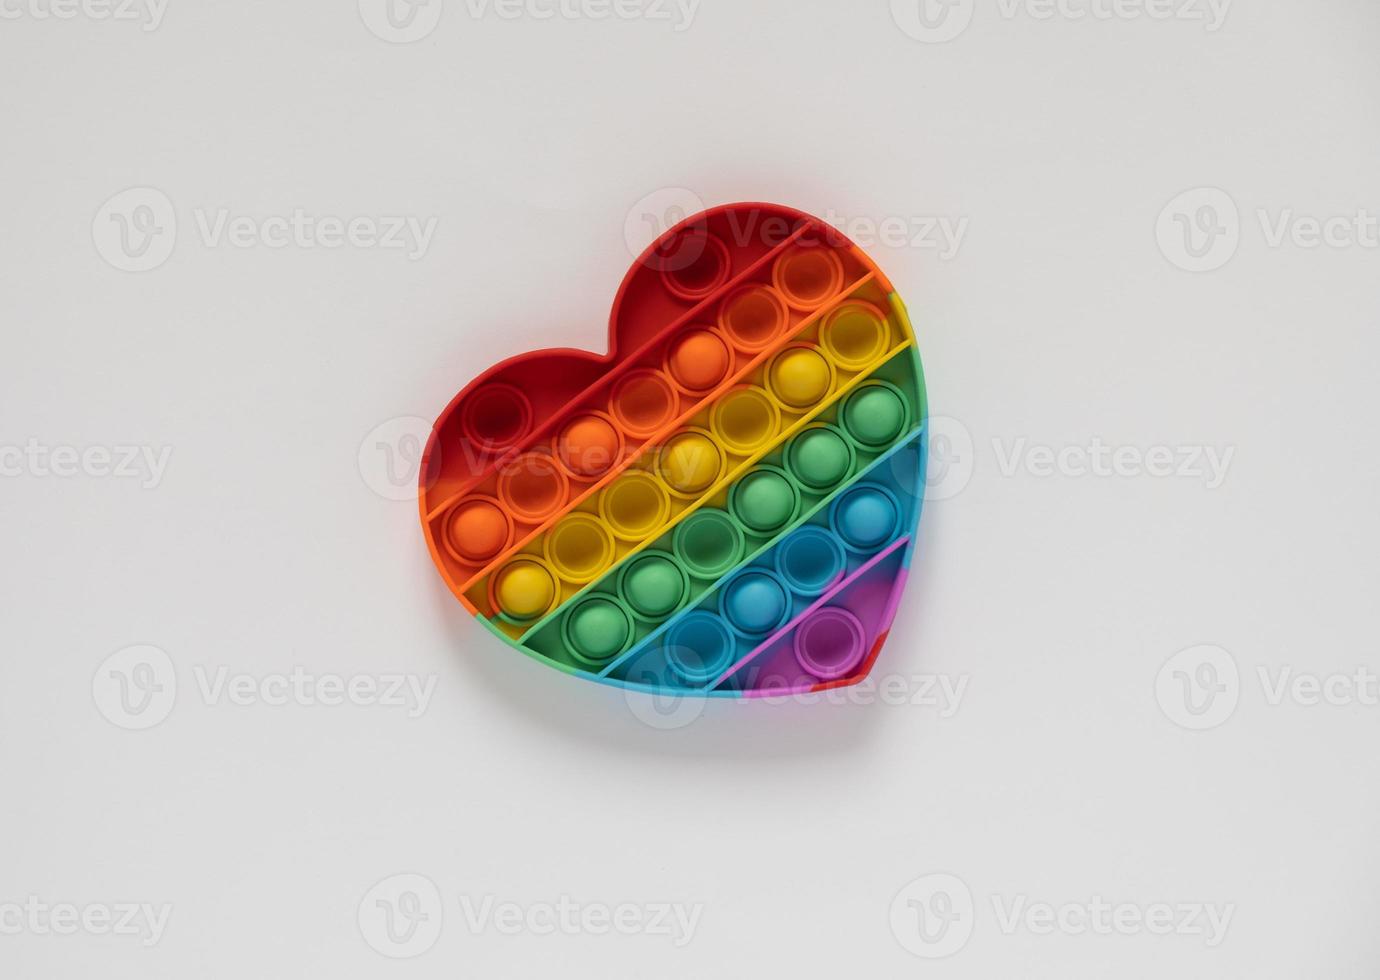 kleur pop it antistress speelgoed voor kinderen. regenboog hartvormige geïsoleerd op een witte achtergrond. foto